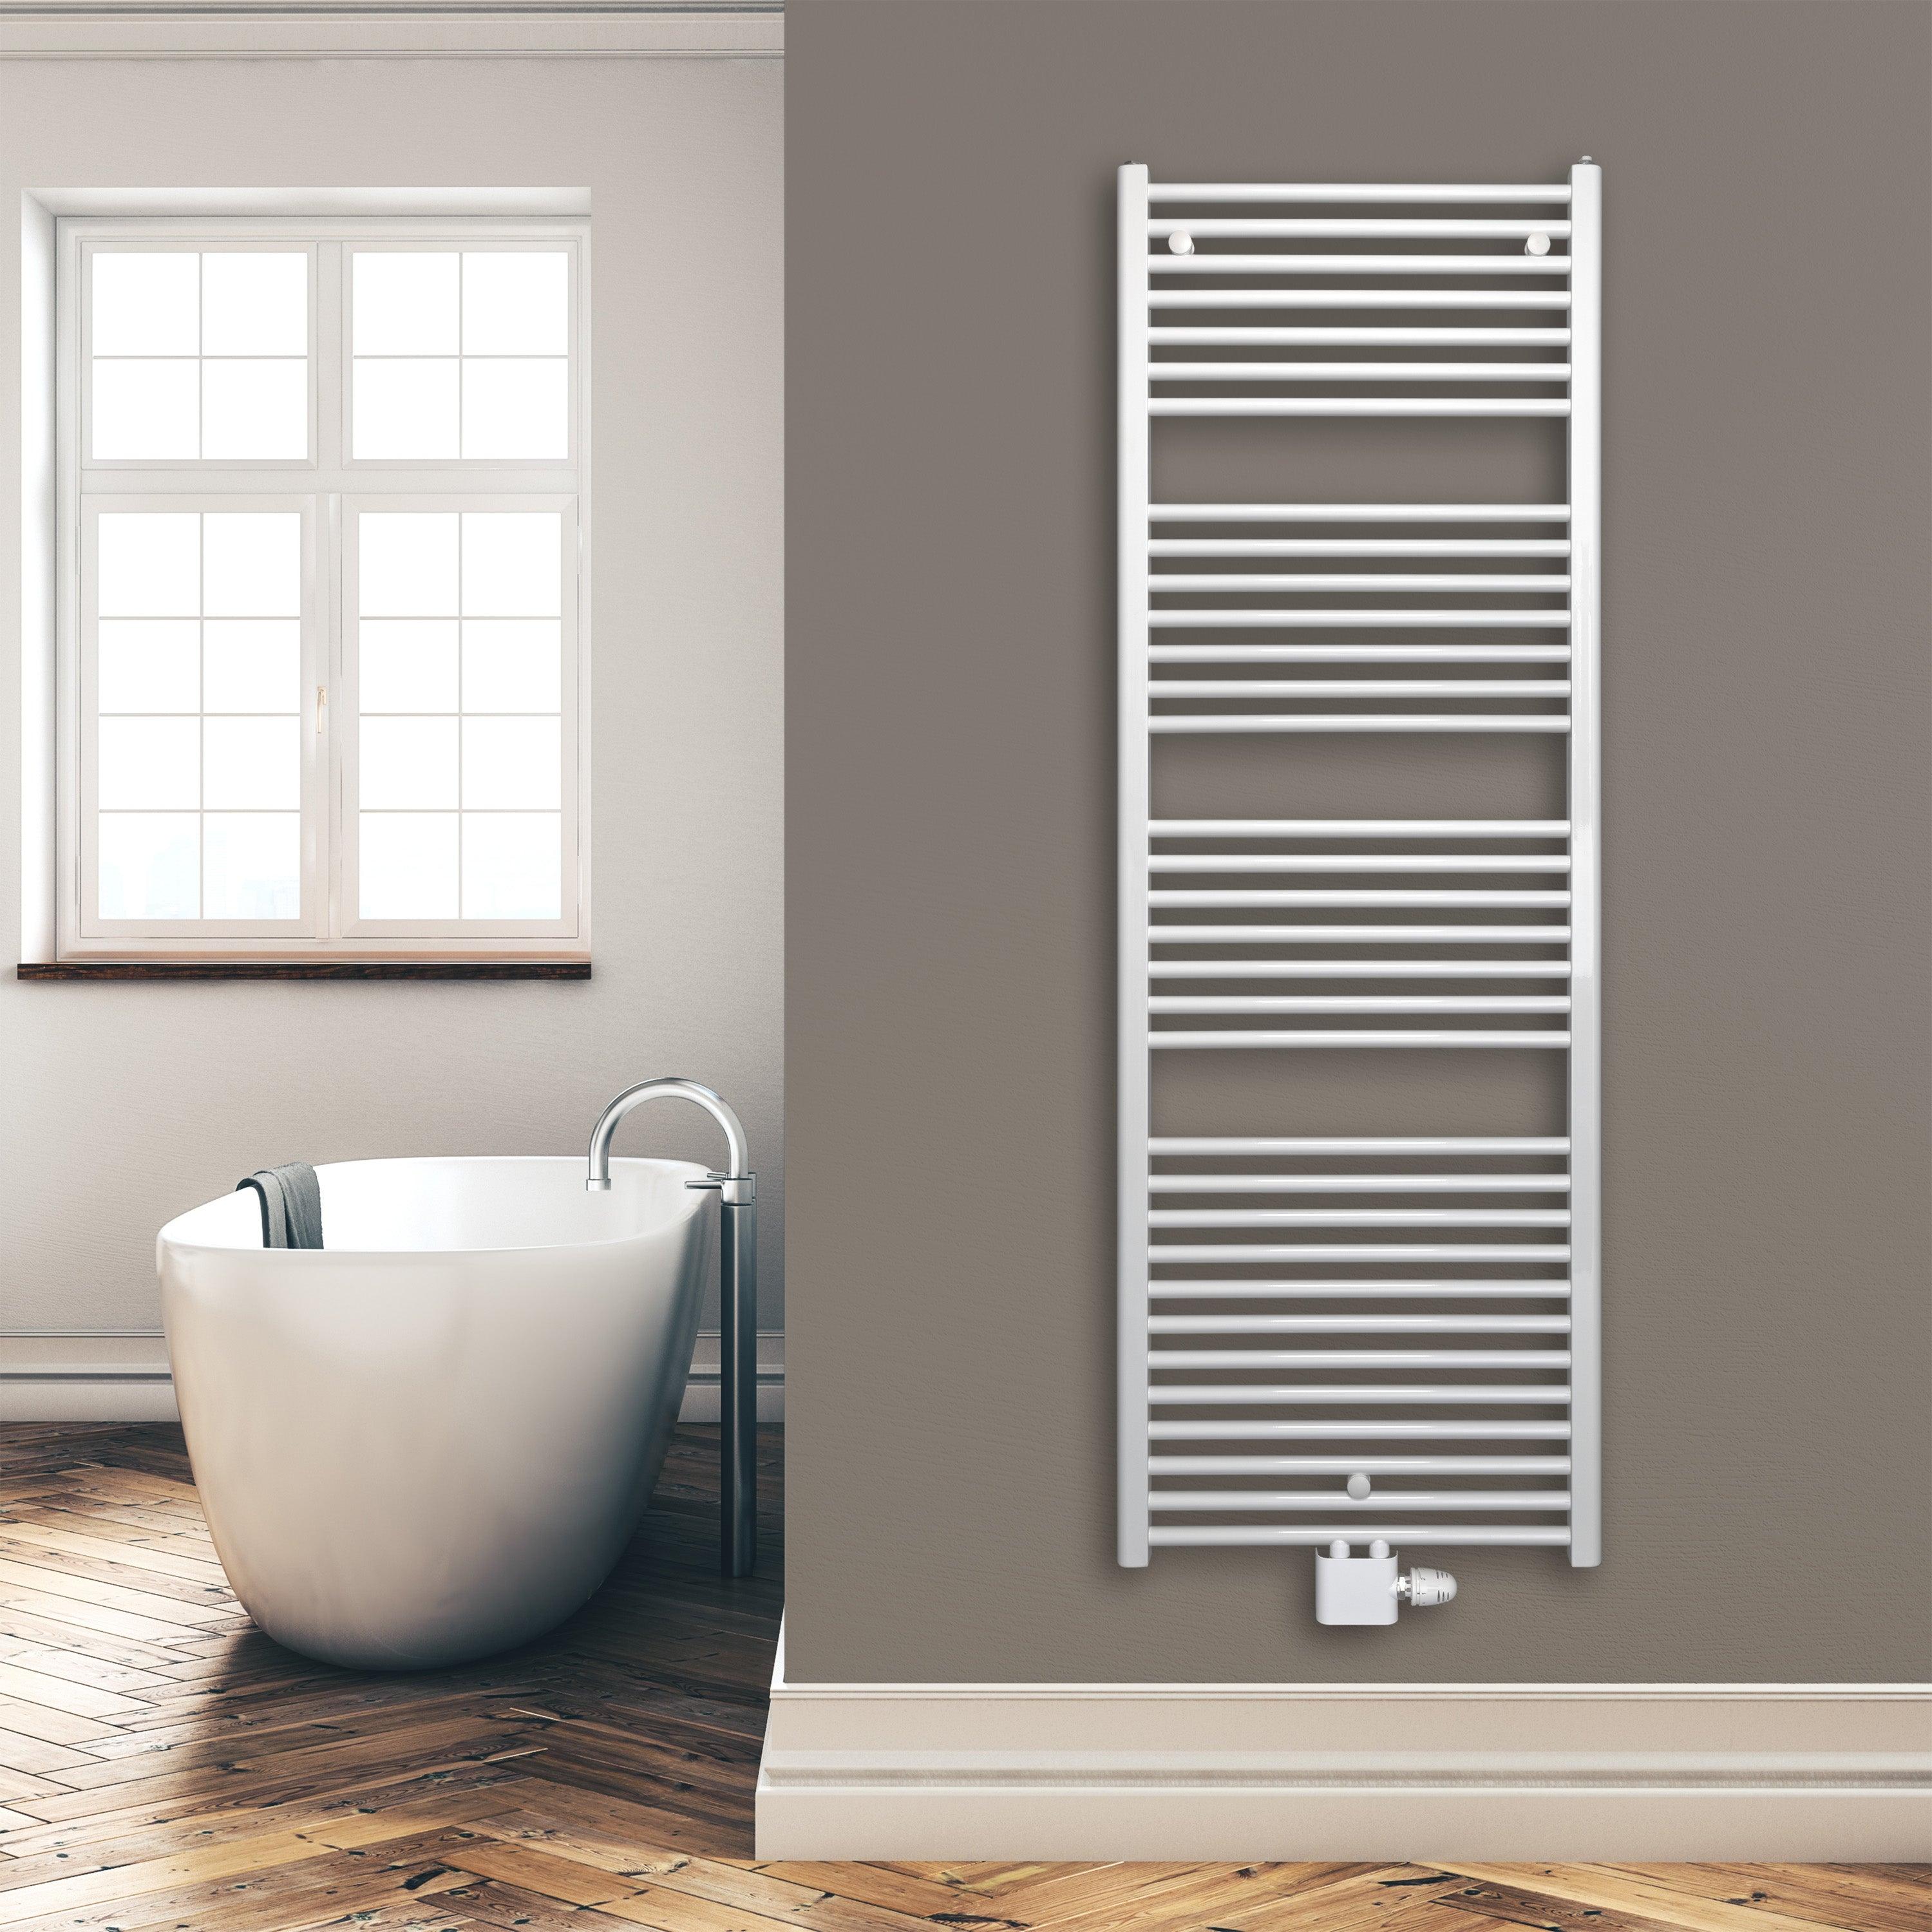 Badheizkörper 1732 x 600 mm gerade mit Mittenanschluss Handtuchhalter Badezimmer Heizung Handtuchwärmer weiß Montagebeispiel - heizkoerper.shop